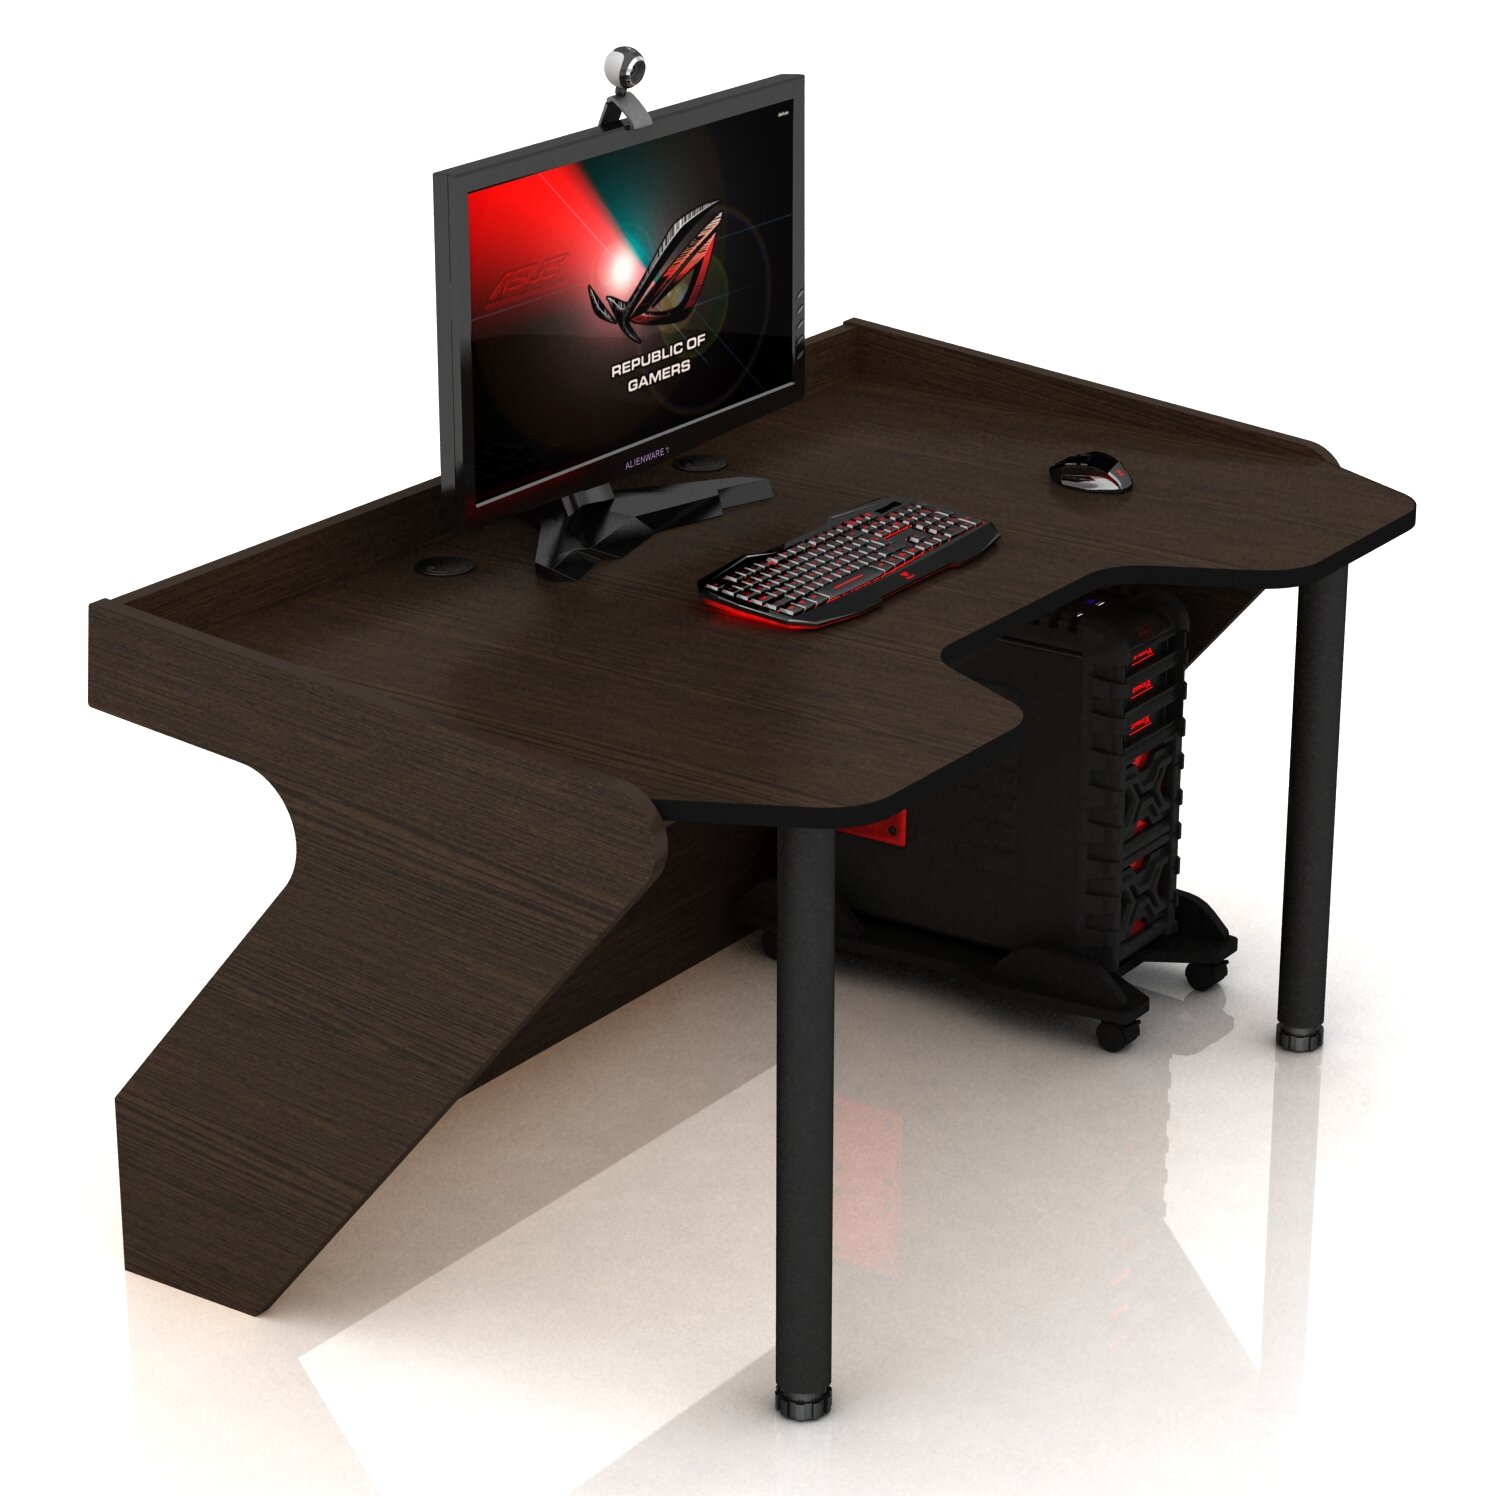 Геймерские игровые столы и кресла Геймерский компьютерный стол DX Panther венге